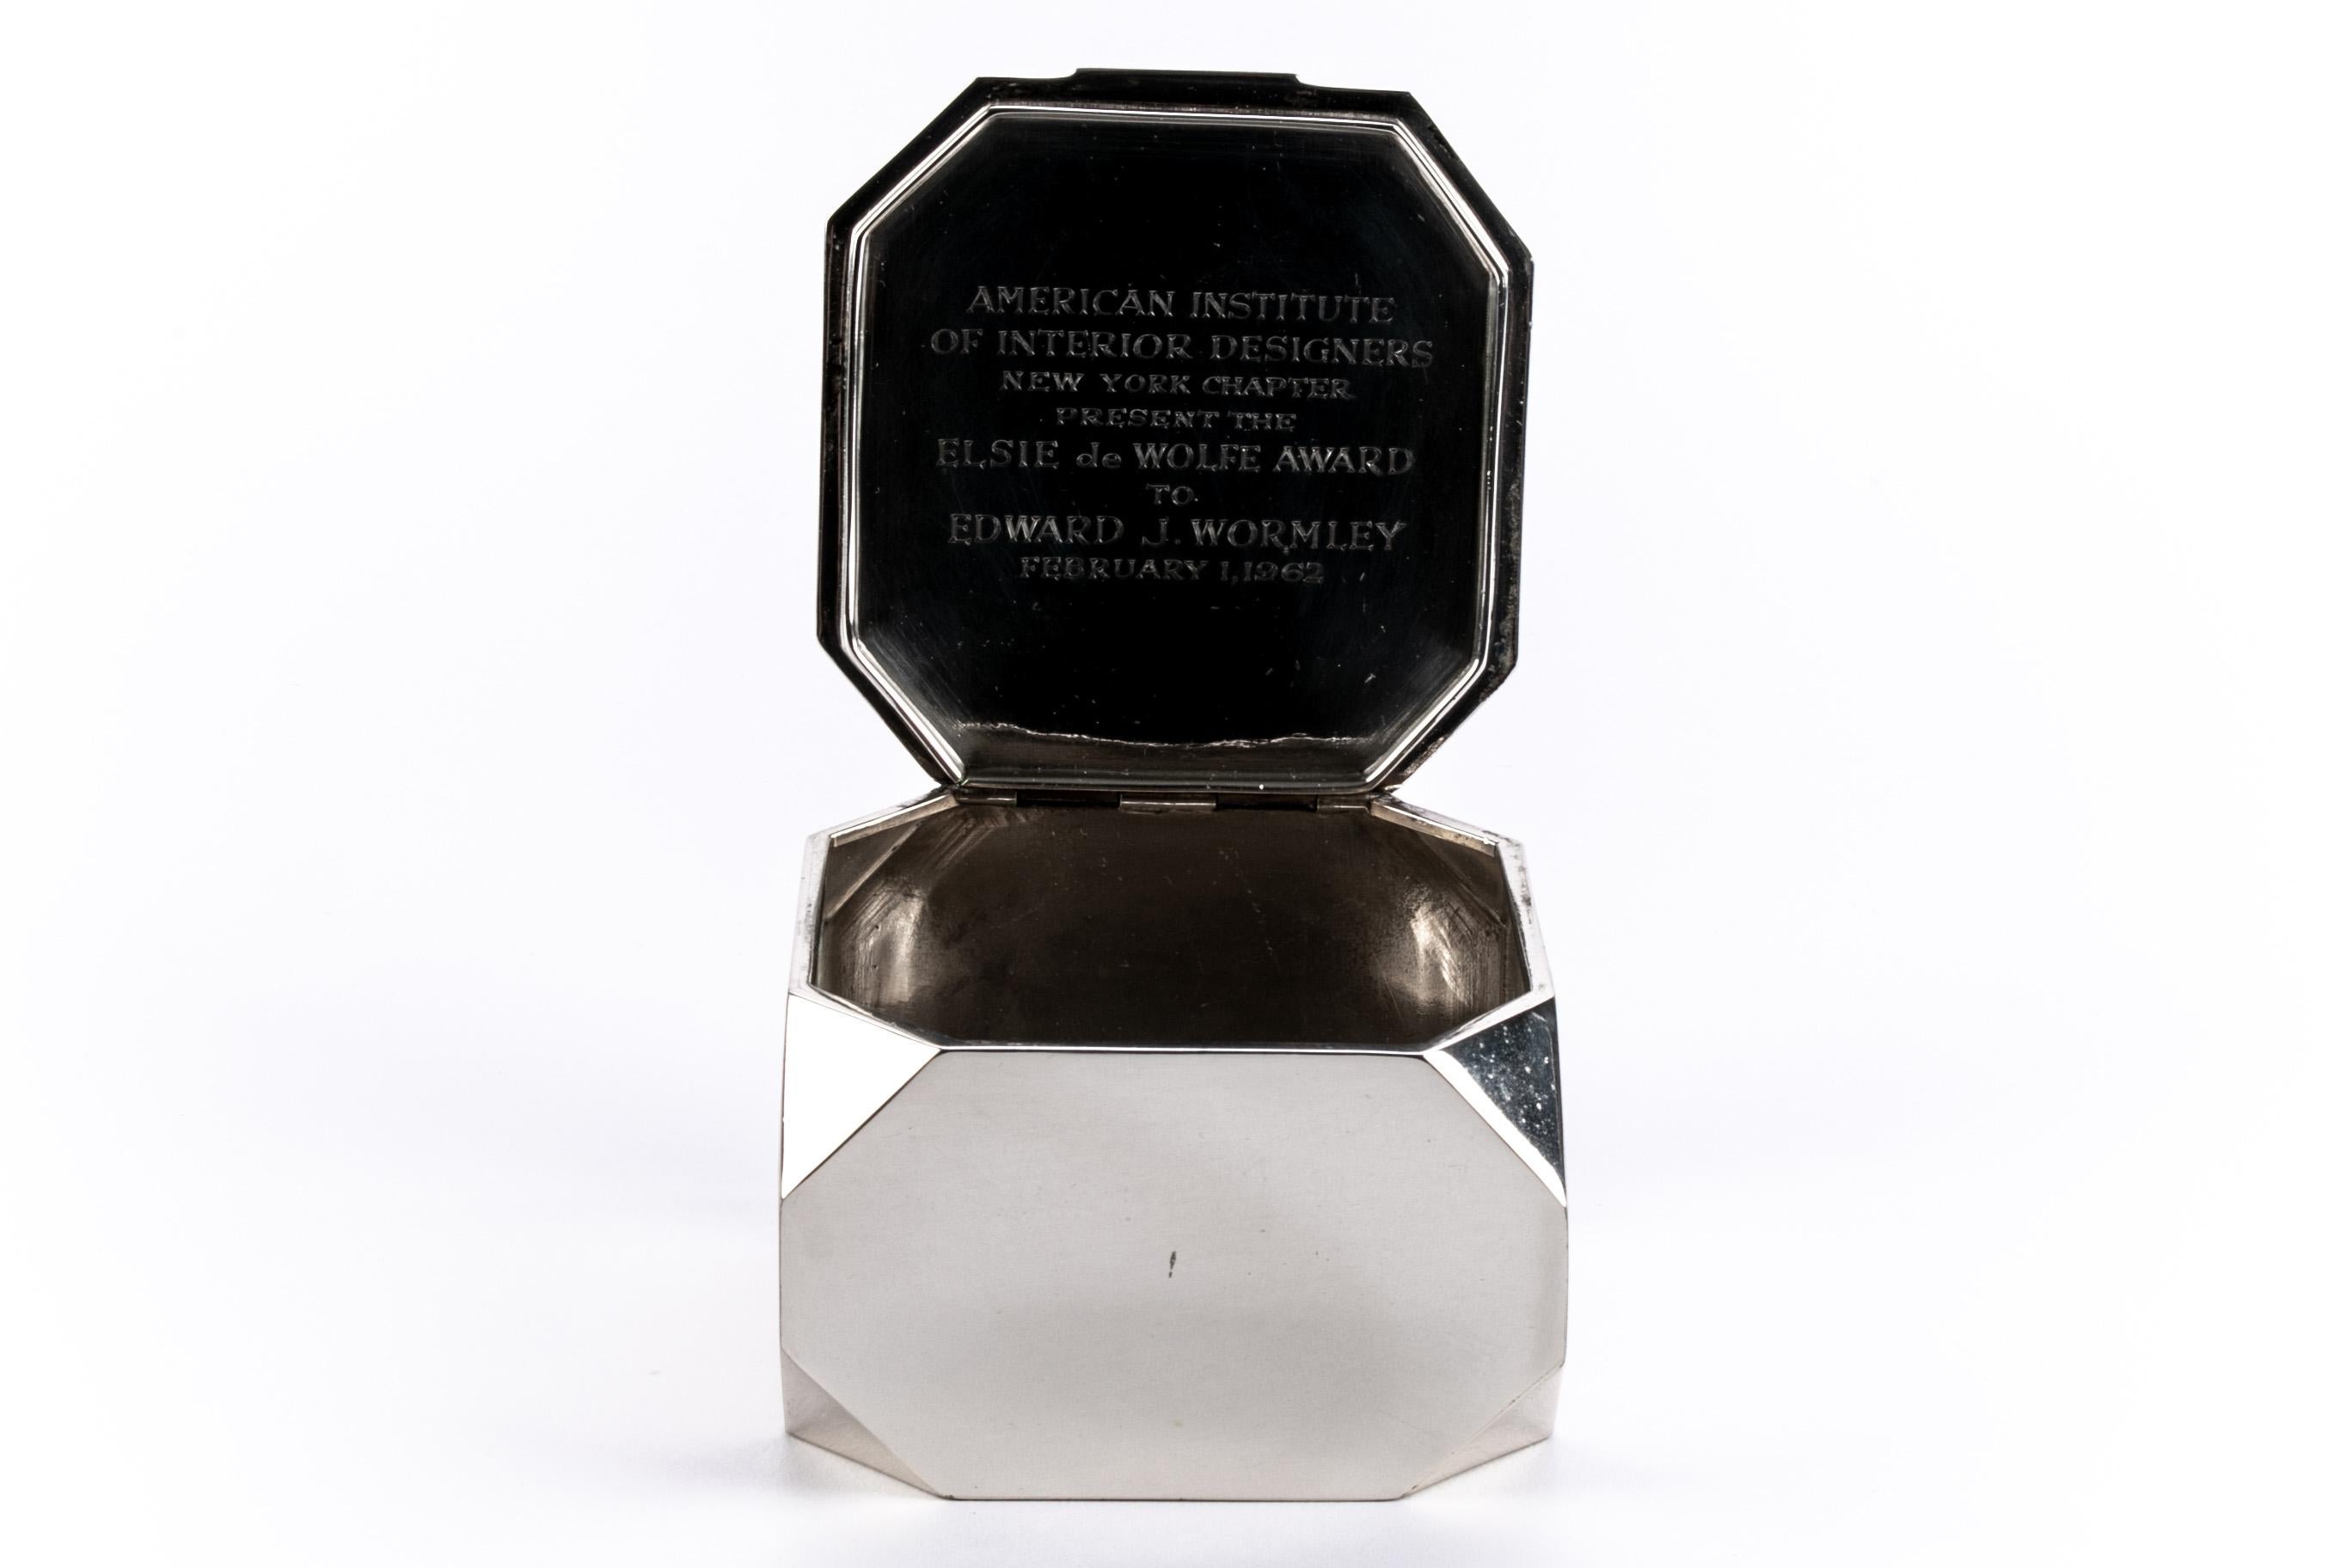 American Tiffany & Co. Sterling Silver Edward J. Wormley Presentation Award Box